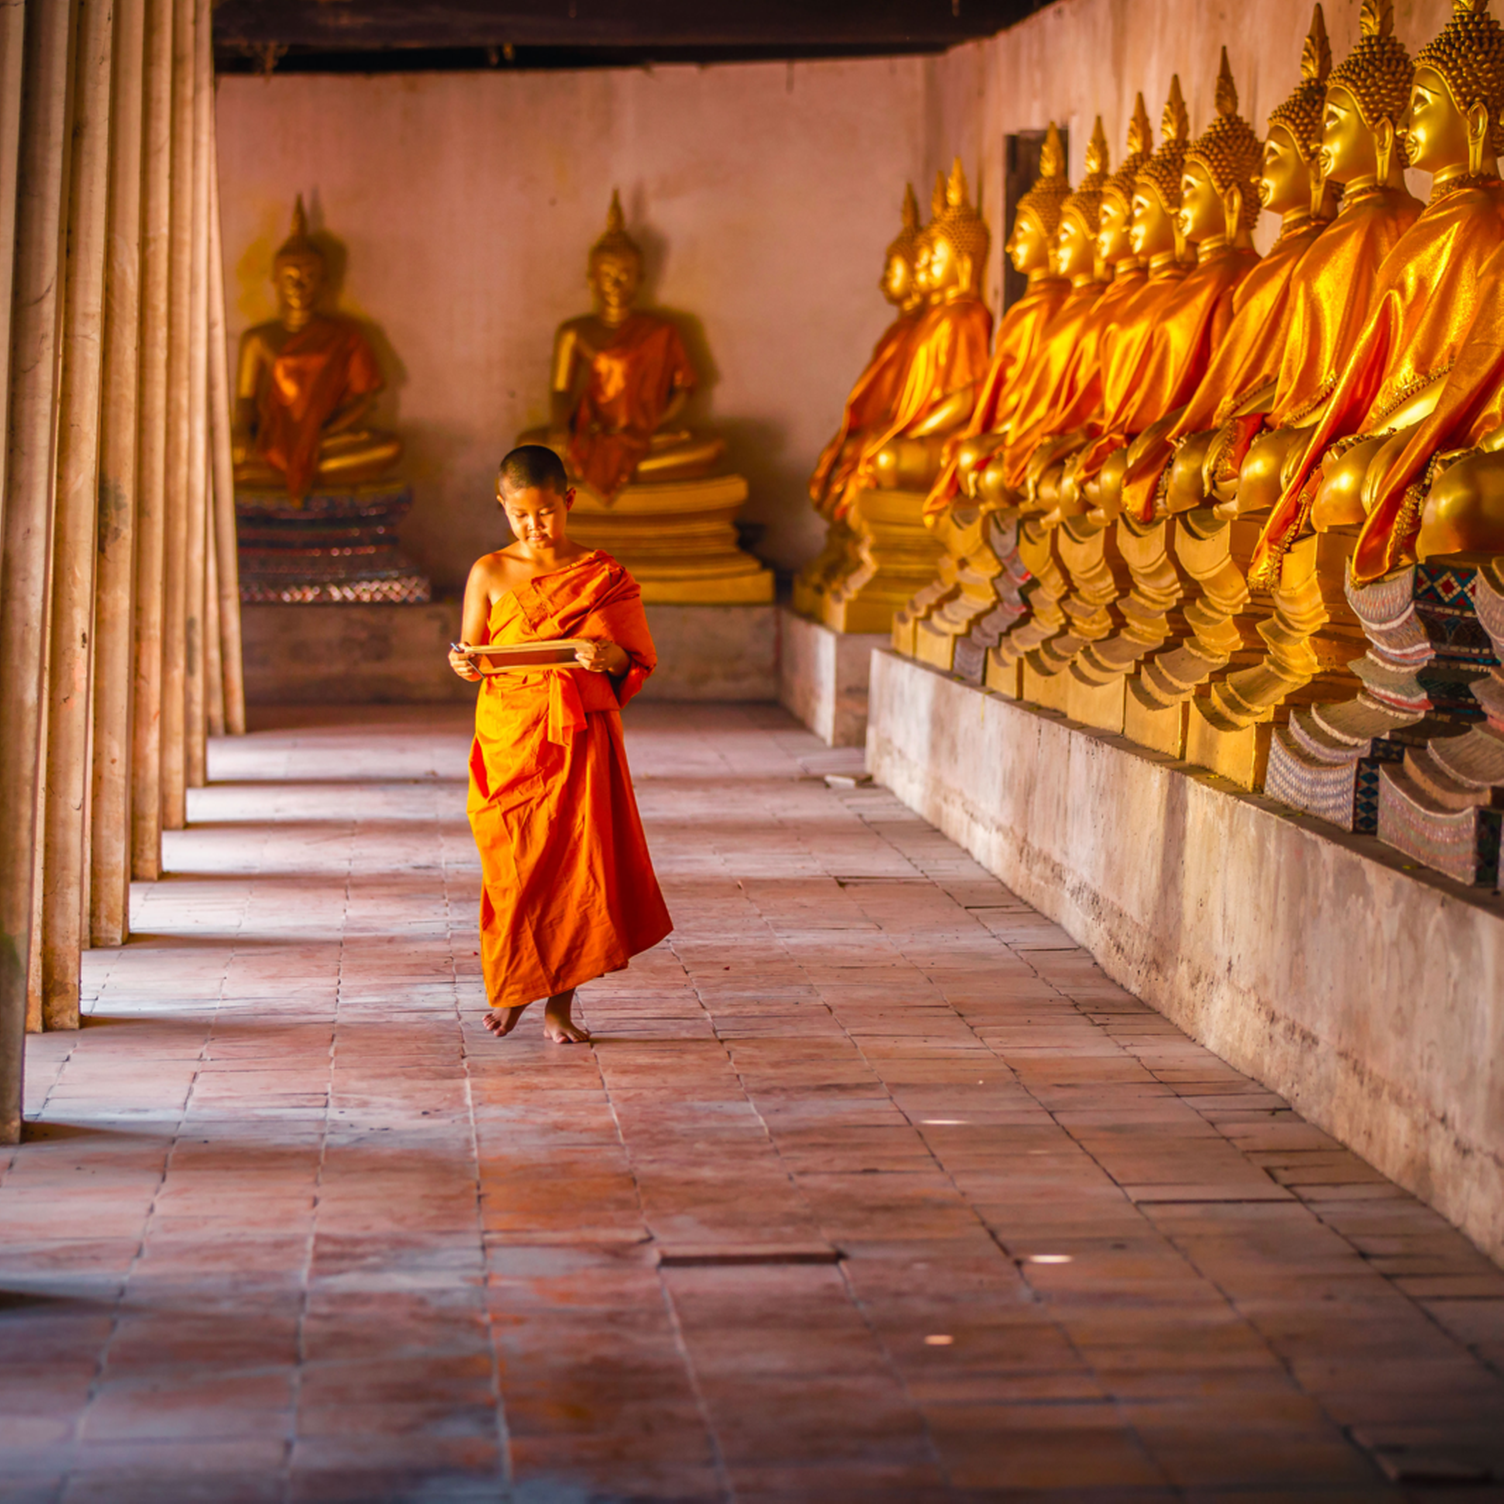 Jeune moine thaï marchant dans une galerie ornée de bouddhas dorés